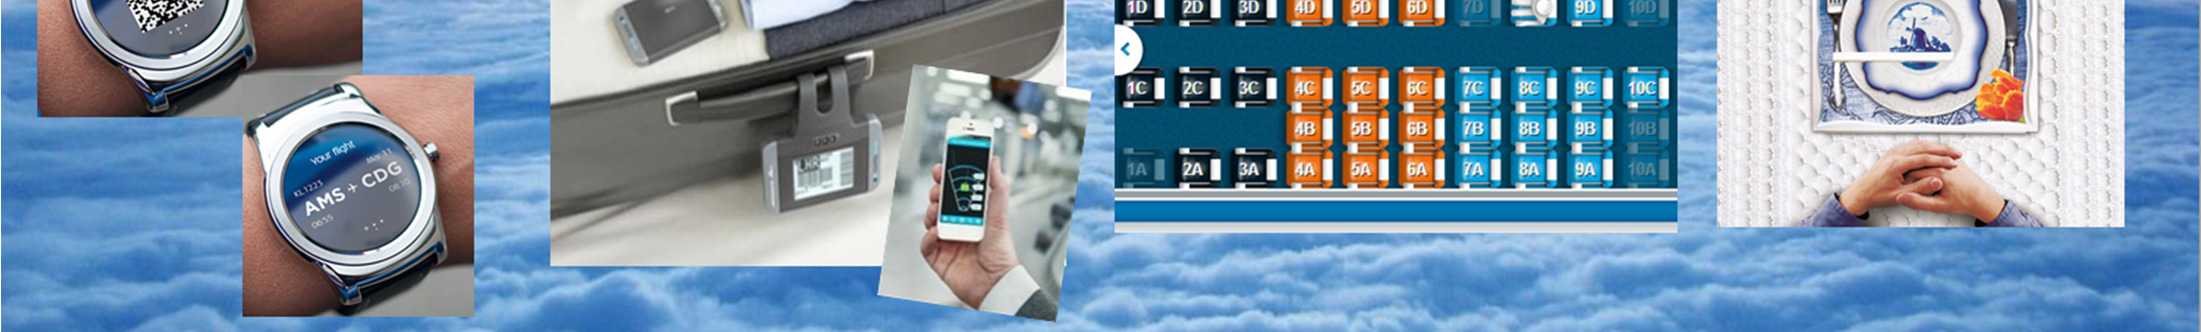 KLM Services en ontwikkelingen KLM app s Vernieuwde KLM app voor tablet KLM Shop - Online bestellen 24/7 service